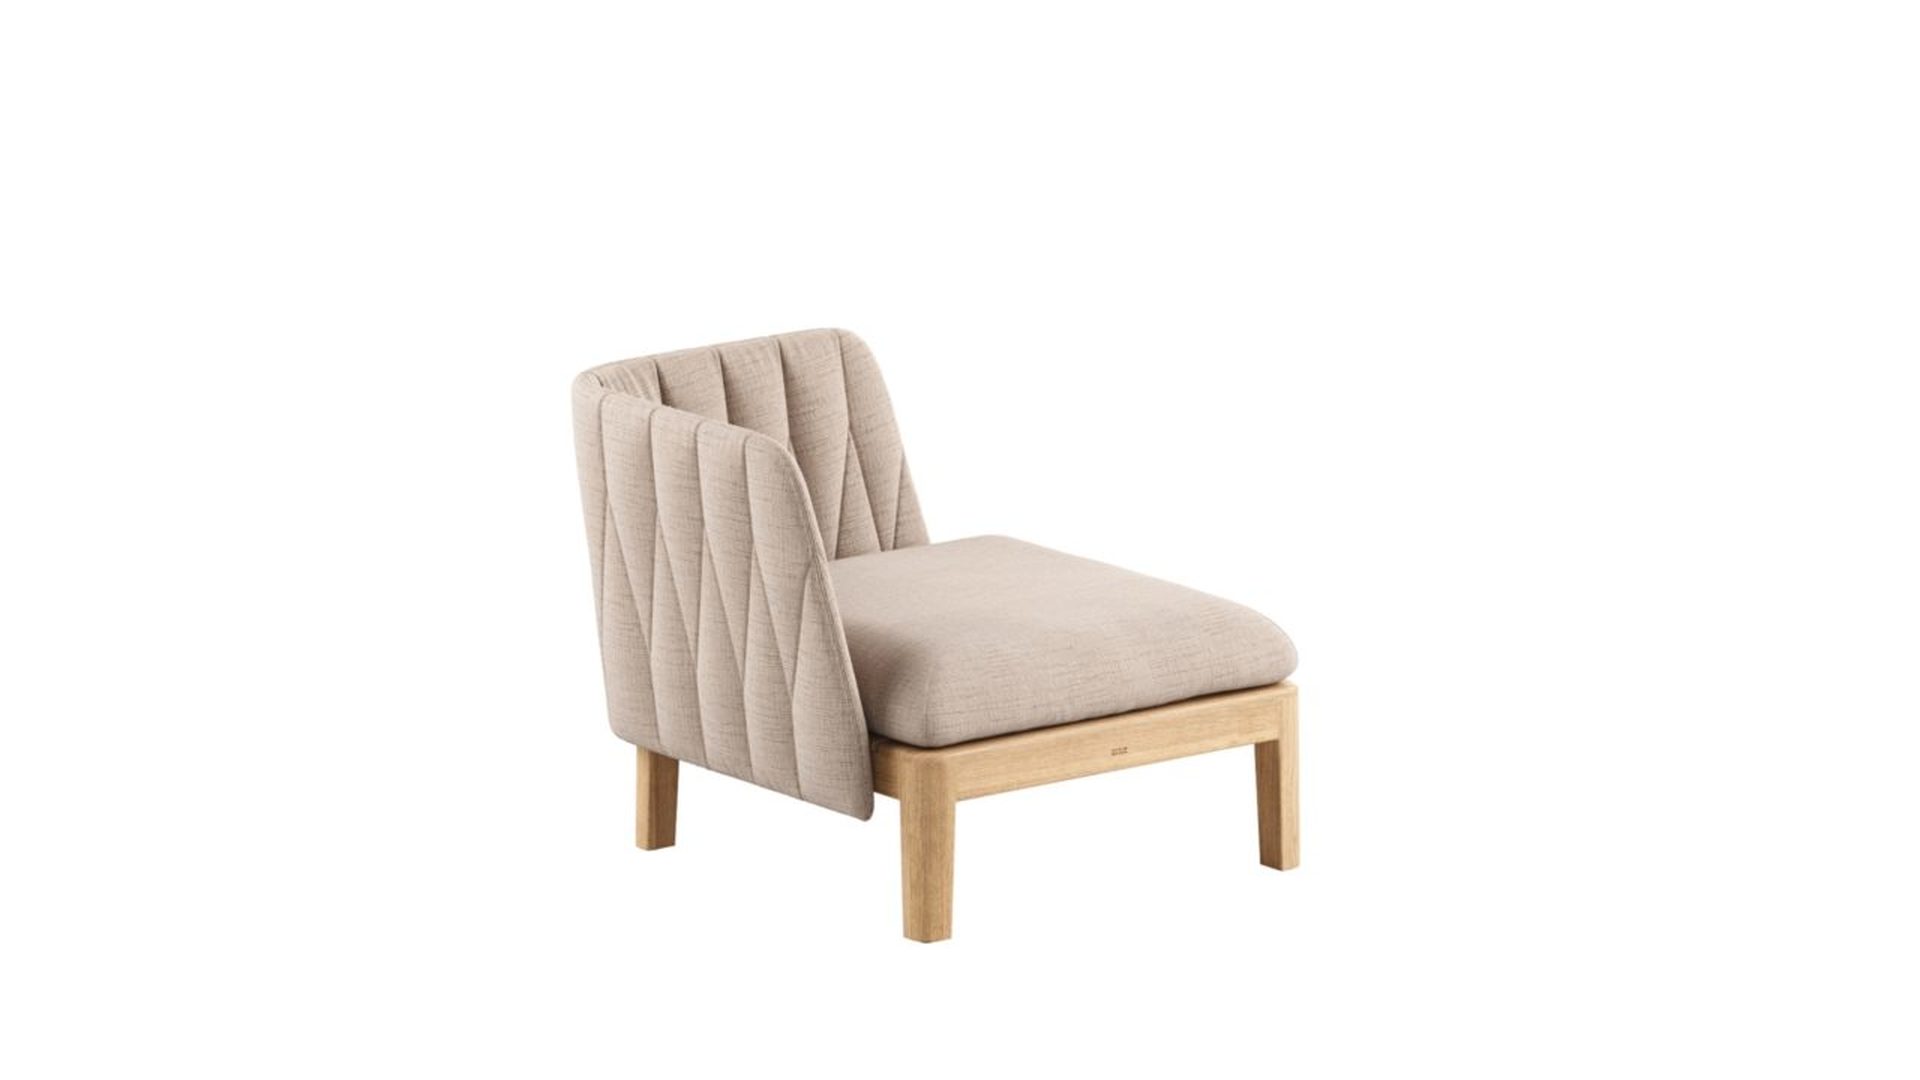 Royal Botania Calypso Lounge armchair fauteuil stoel modulaire bank outdoor HORA Barneveld 2.jpg